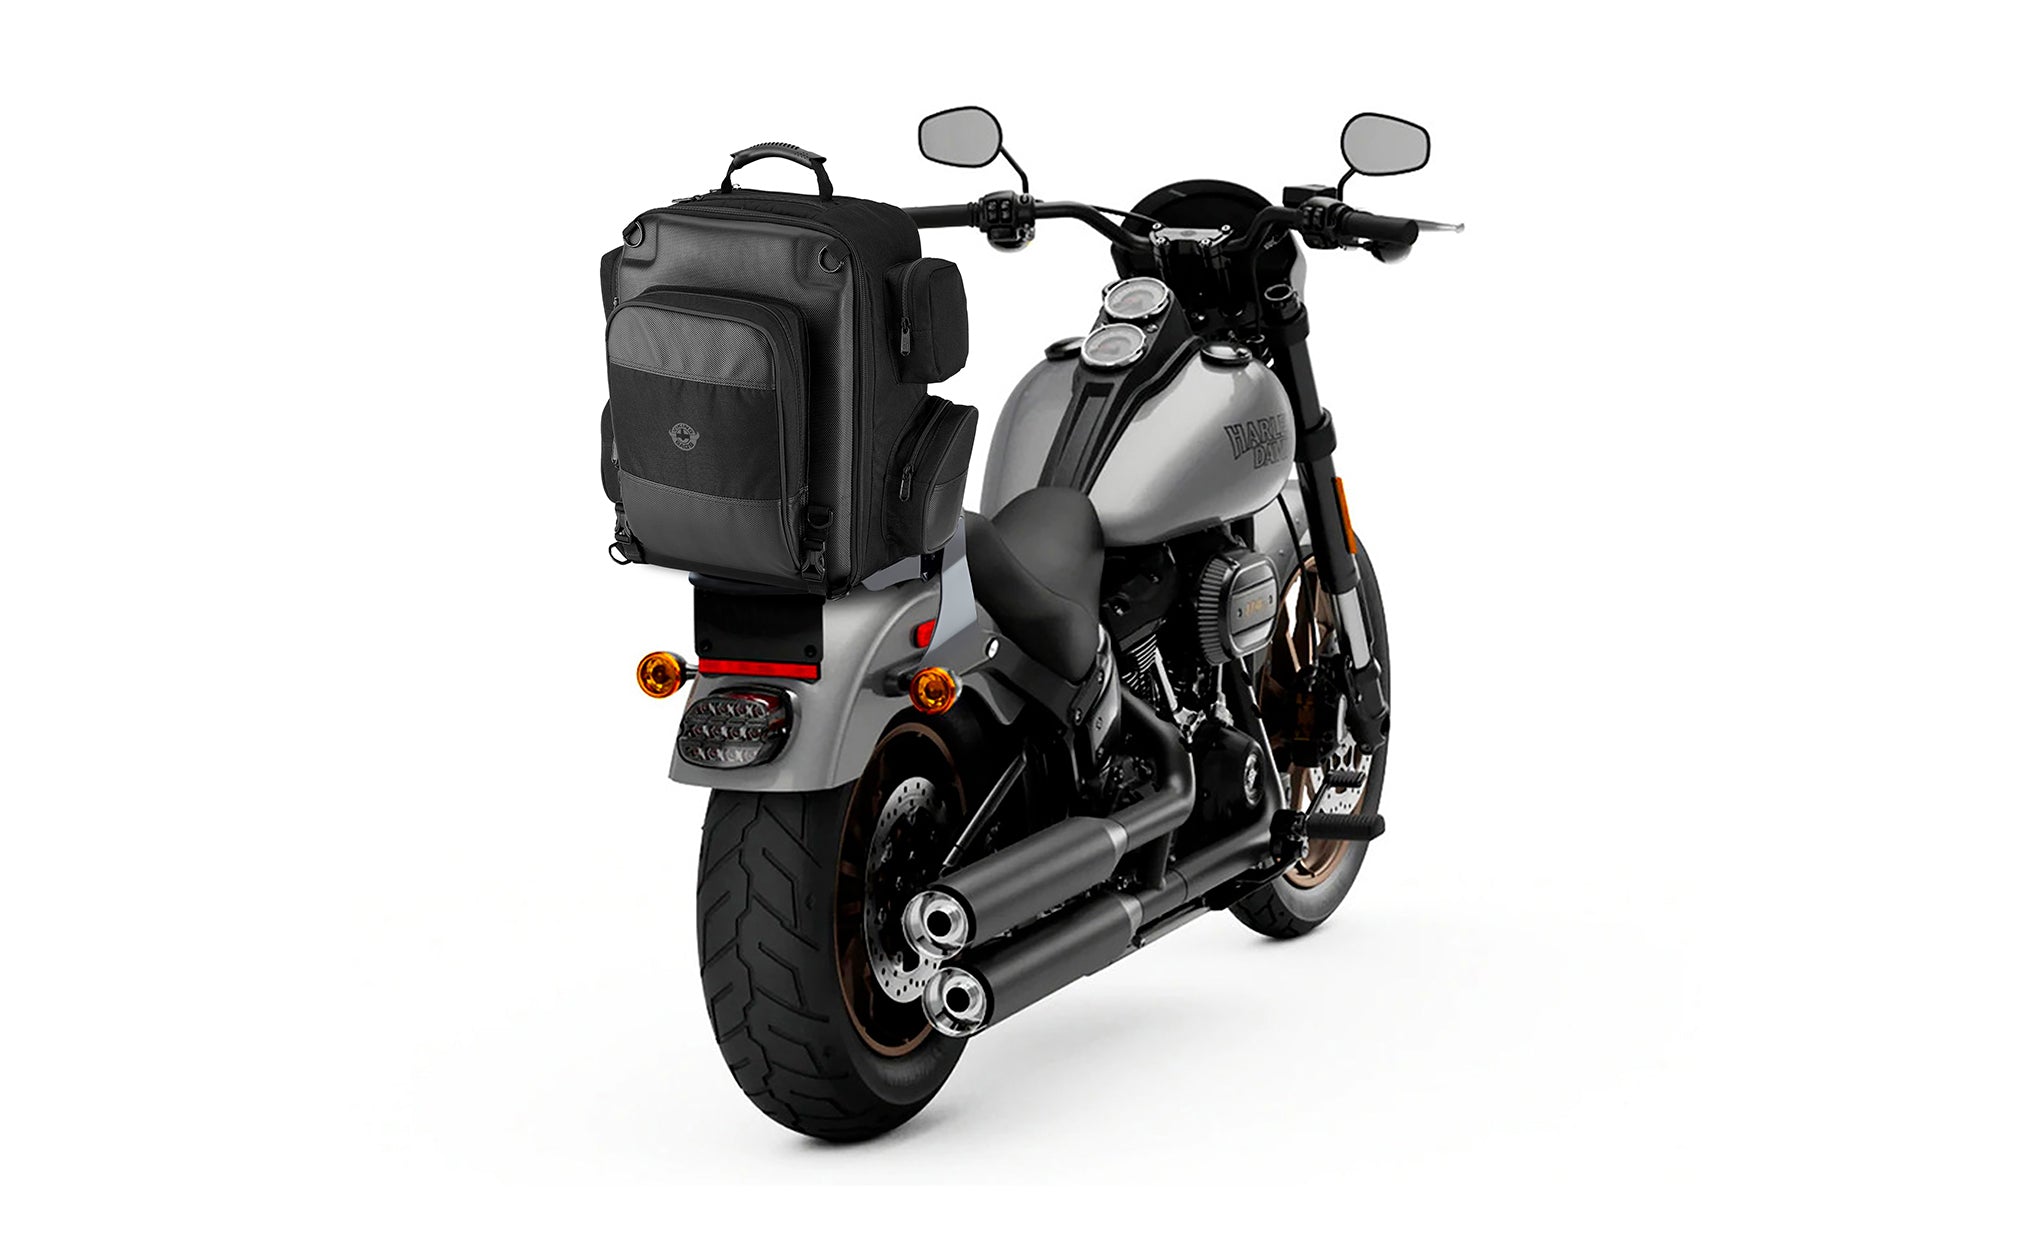 Viking Voyage Large Suzuki Motorcycle Tail Bag Bag on Bike View @expand